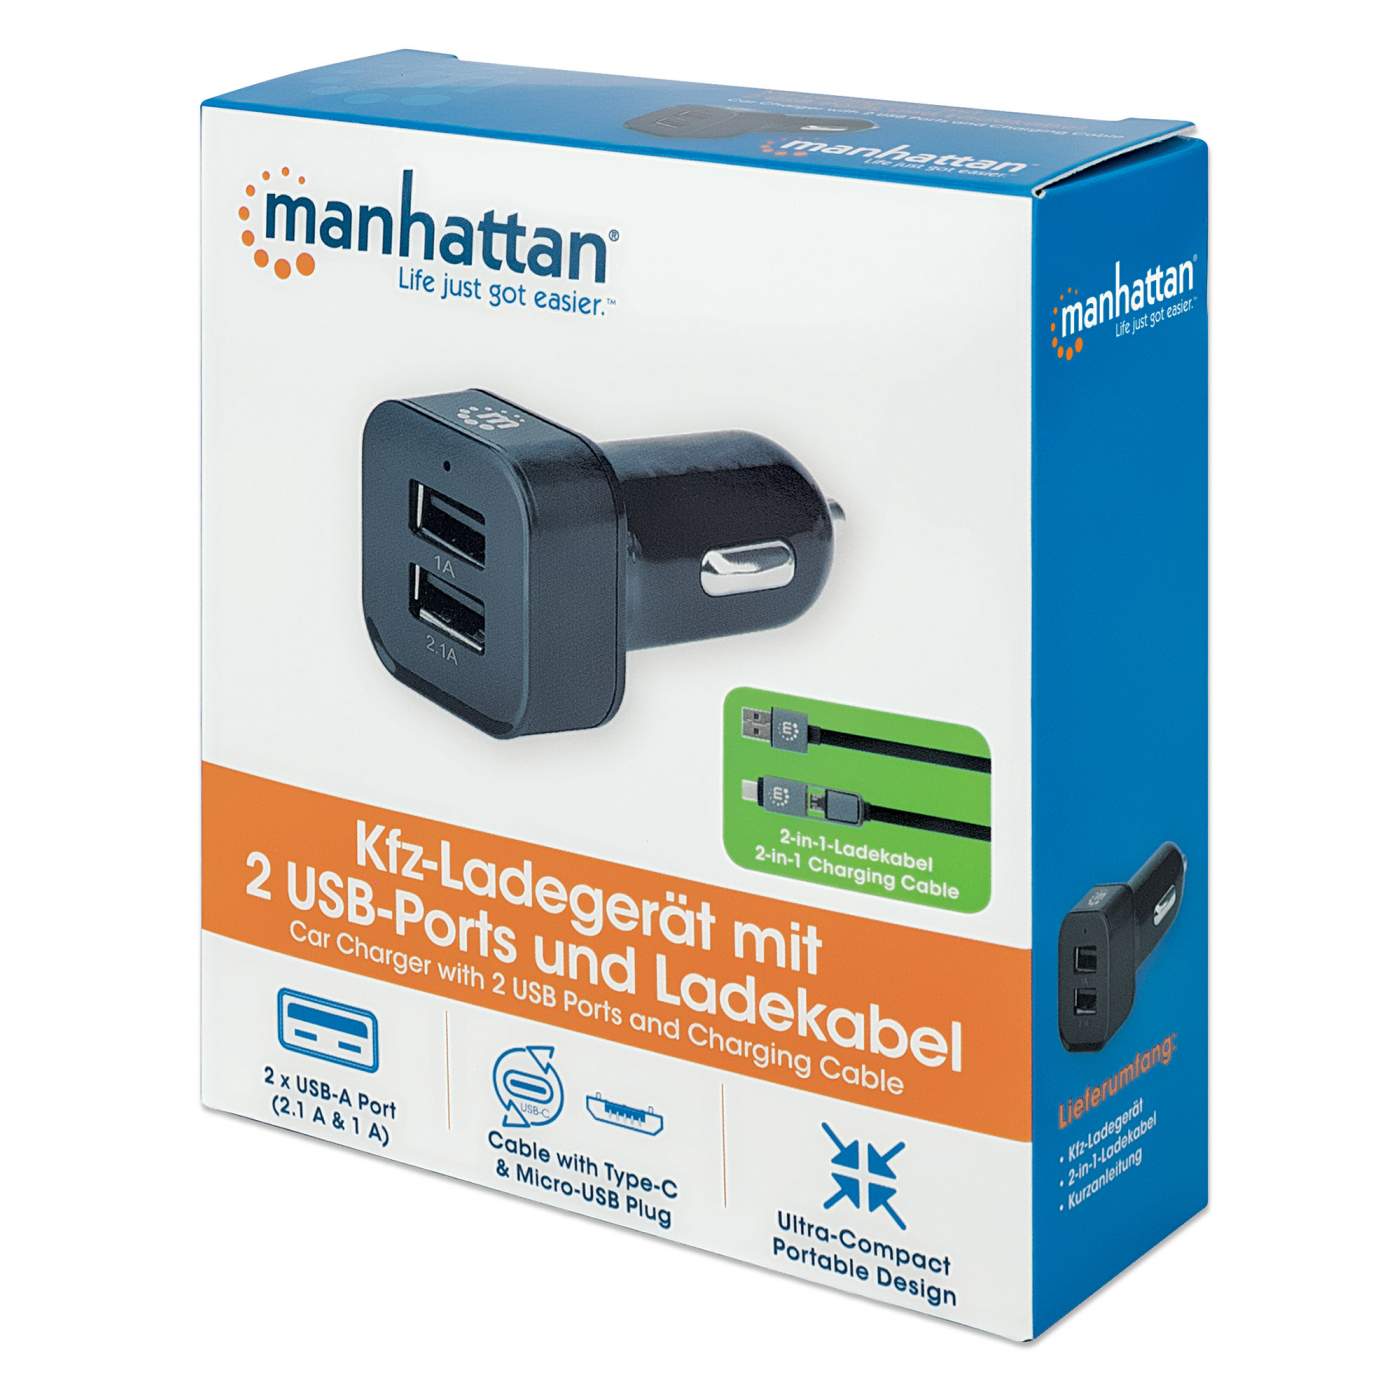 Manhattan Kfz-Ladegerät mit 2 USB-Ports und Ladekabel (102179)